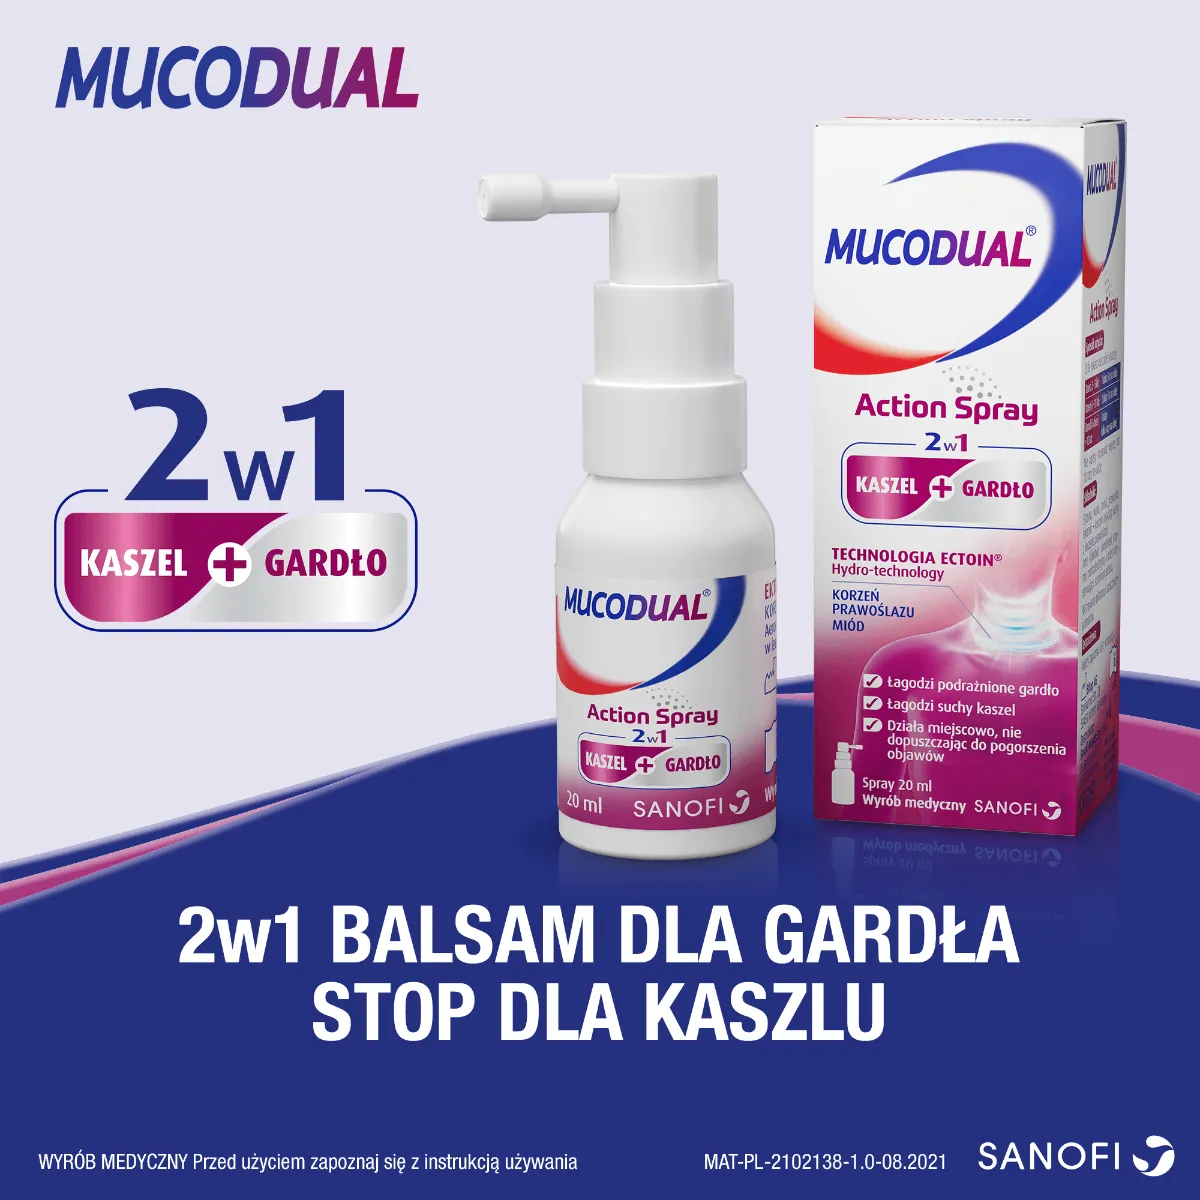 Mucodual 2w1 Action Spray, aerozol, 20 ml. Data ważności 2022-08-31 